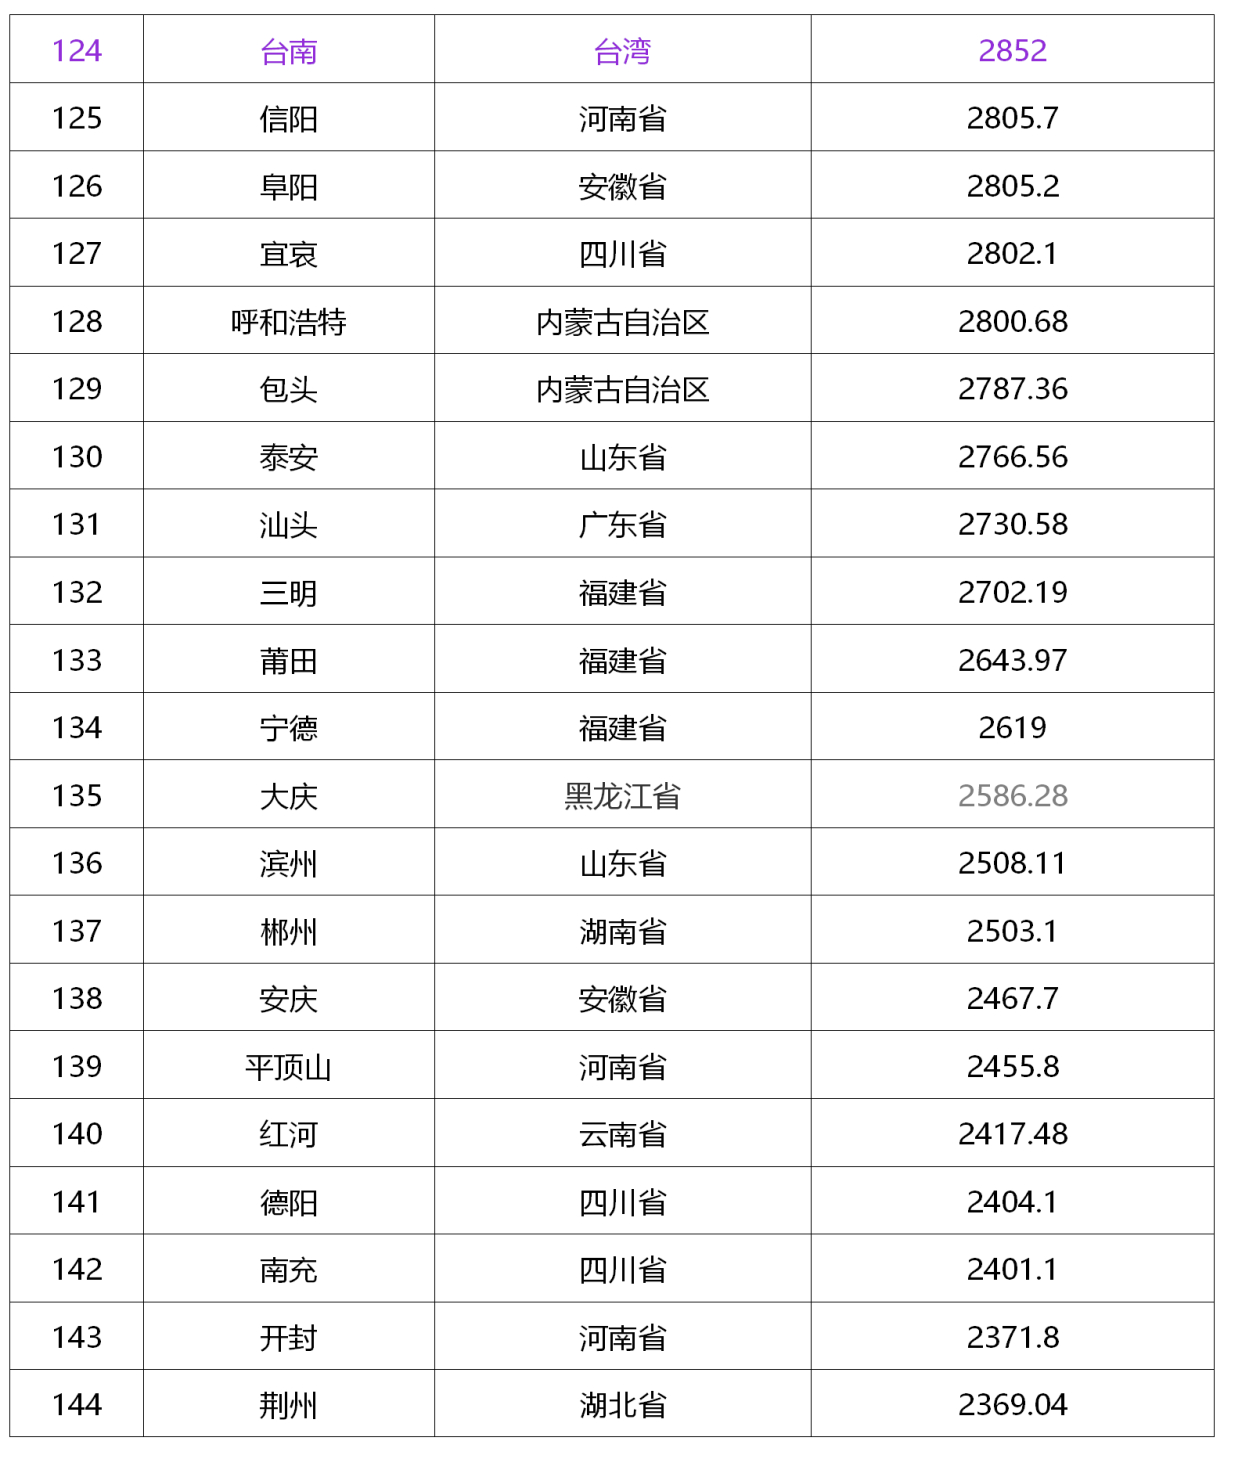 2020中国各省gdp官方排名_2020年中国各省GDP总量排名